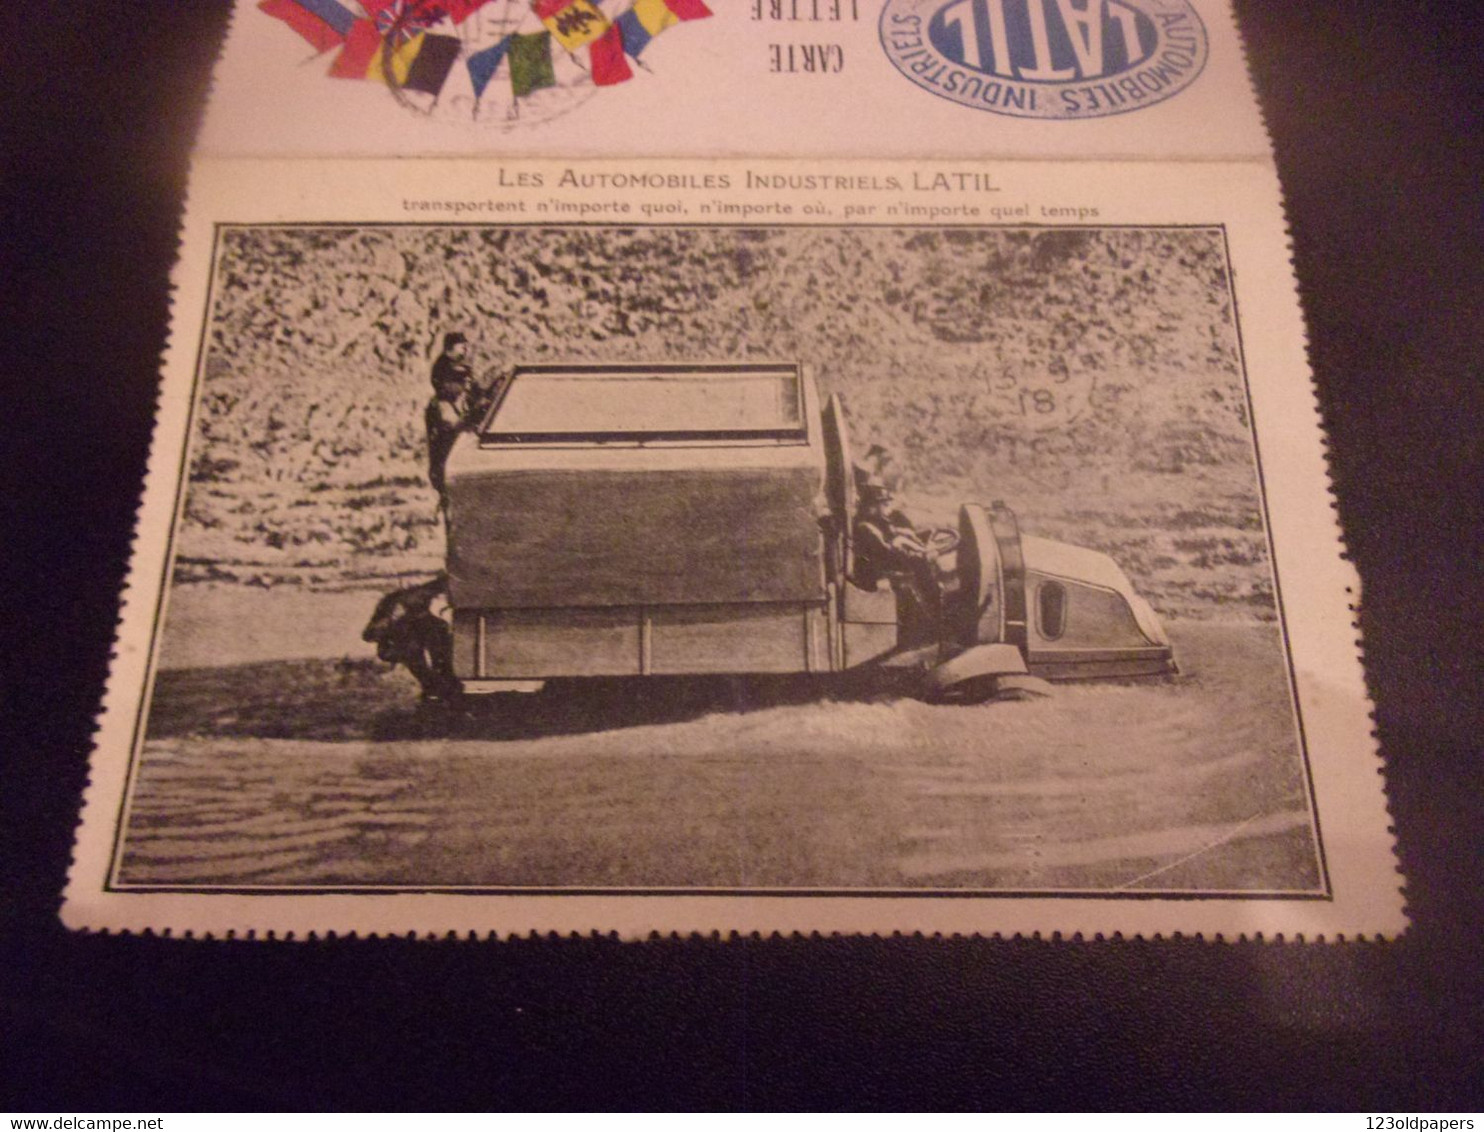 ️ 1918 Rare Carte FM Avec Pub Automobiles Latil à Suresnes. Camion  TRANSPORTENT N IMPORTE QUOI N IMPORTE QUELS TEMPS - Suresnes